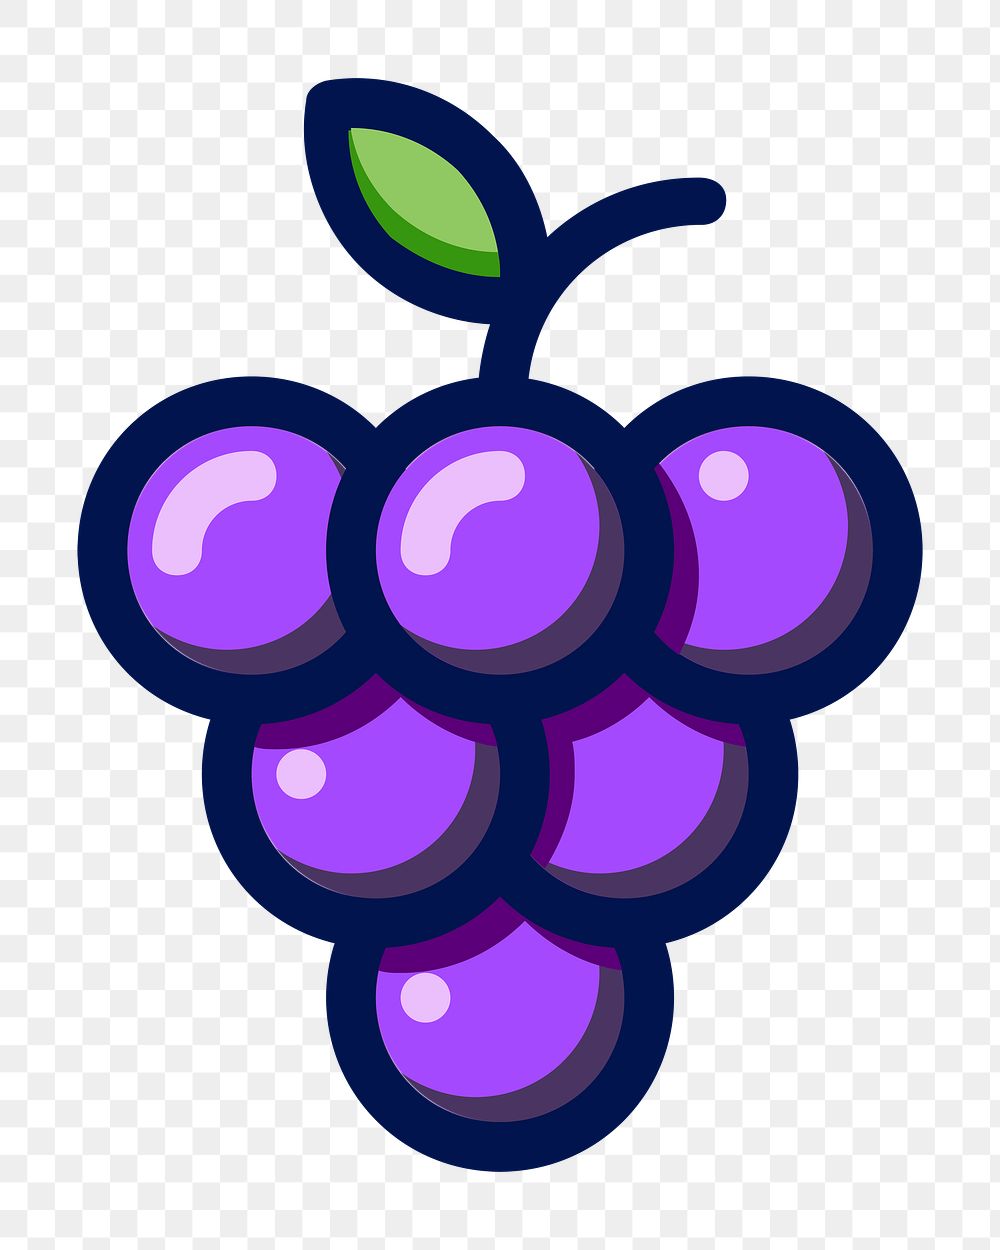 PNG Purple grape fruit sticker,  transparent background. Free public domain CC0 image.